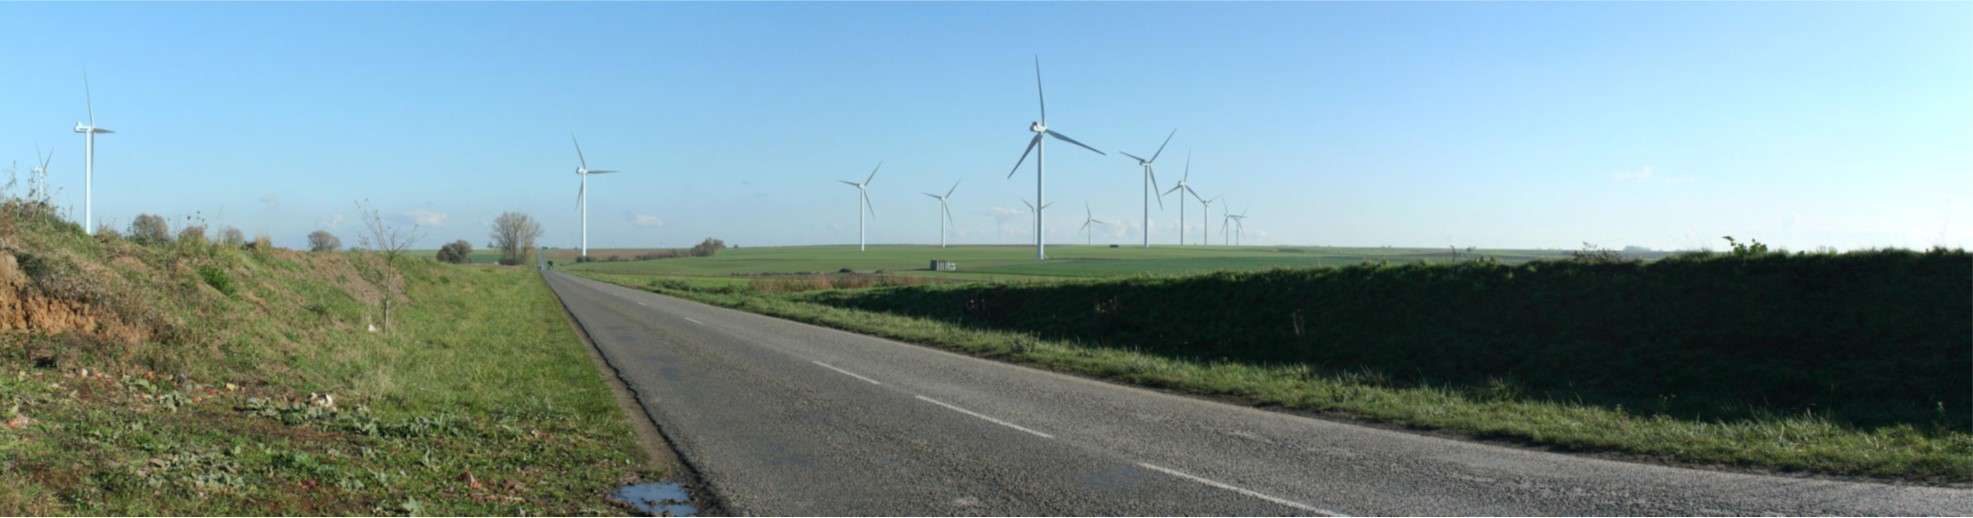   Projet éolien Extension de la Chaussée Brunehaut